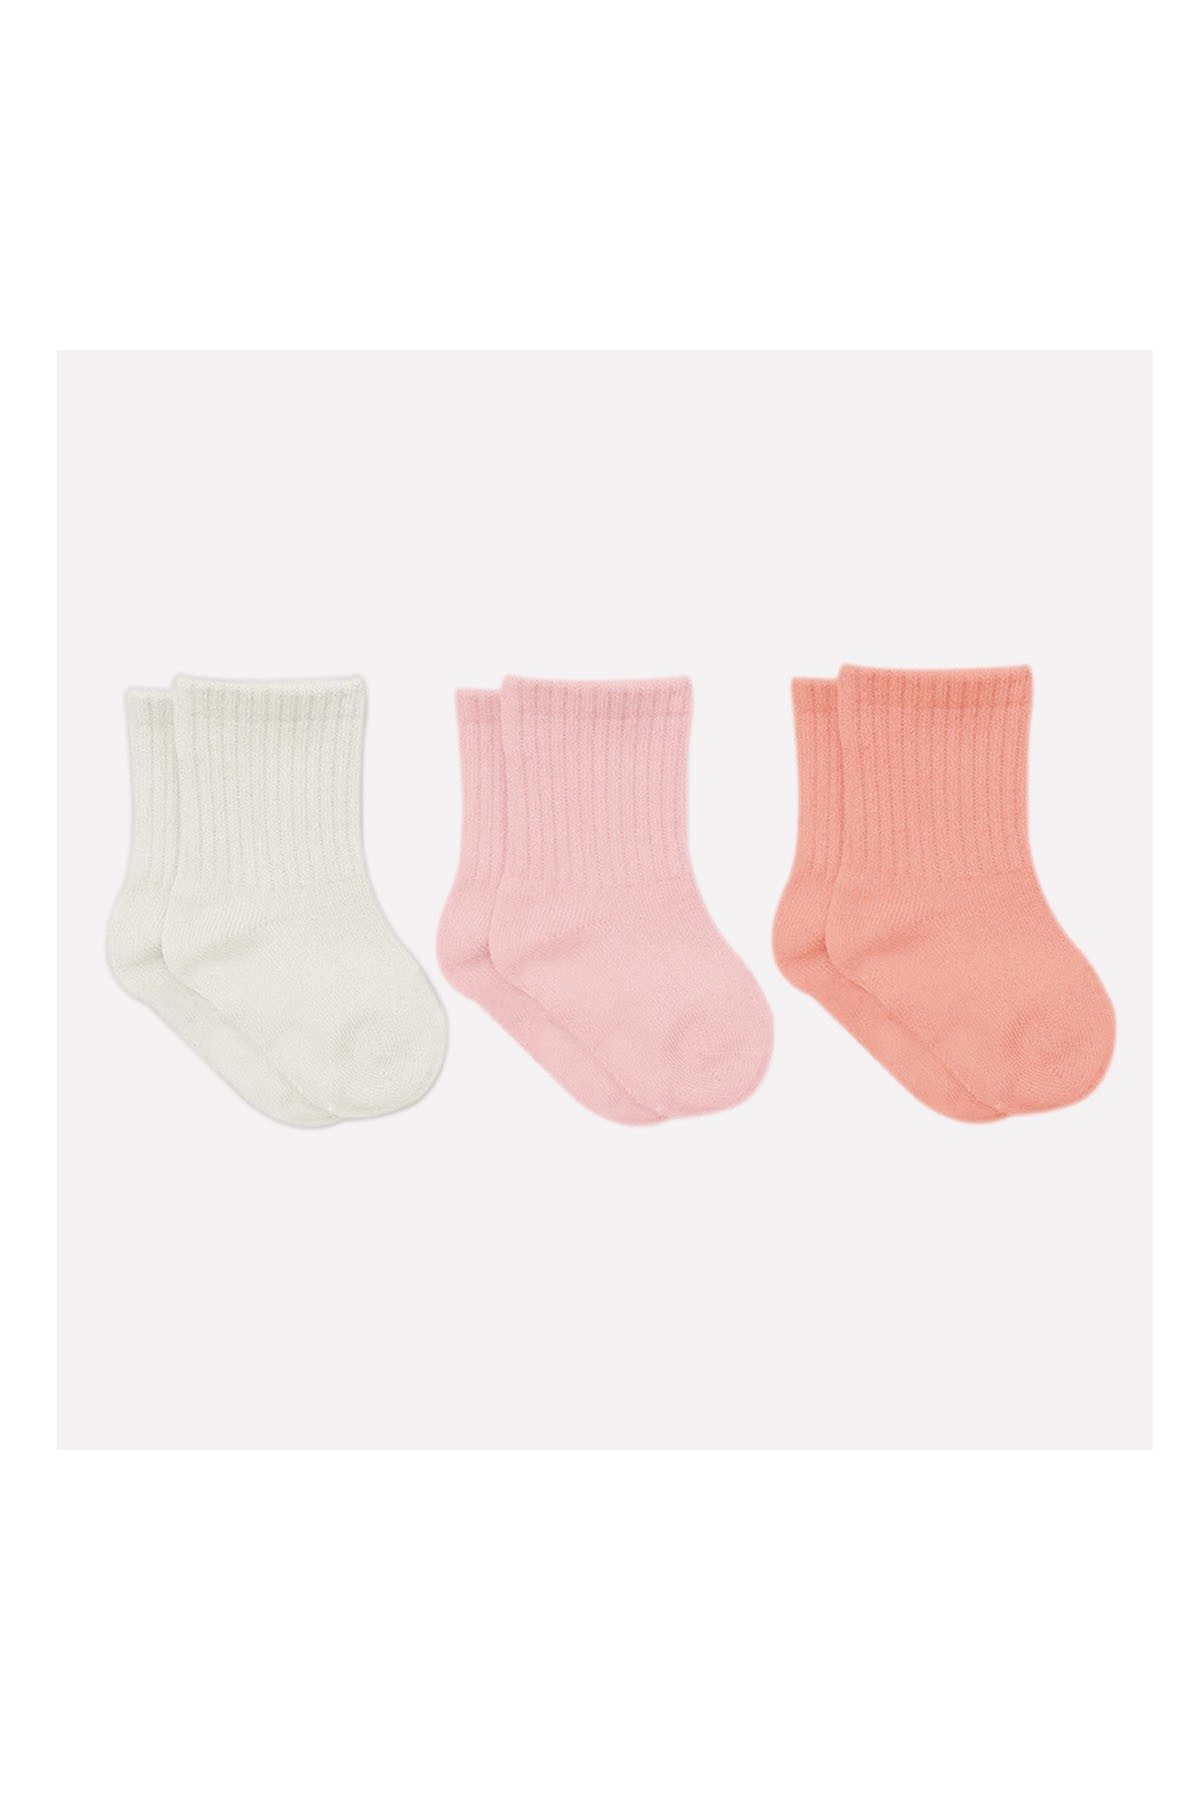 Bistyle 3'lü Penye Bebek Çorabı Pembe Çok Renkli